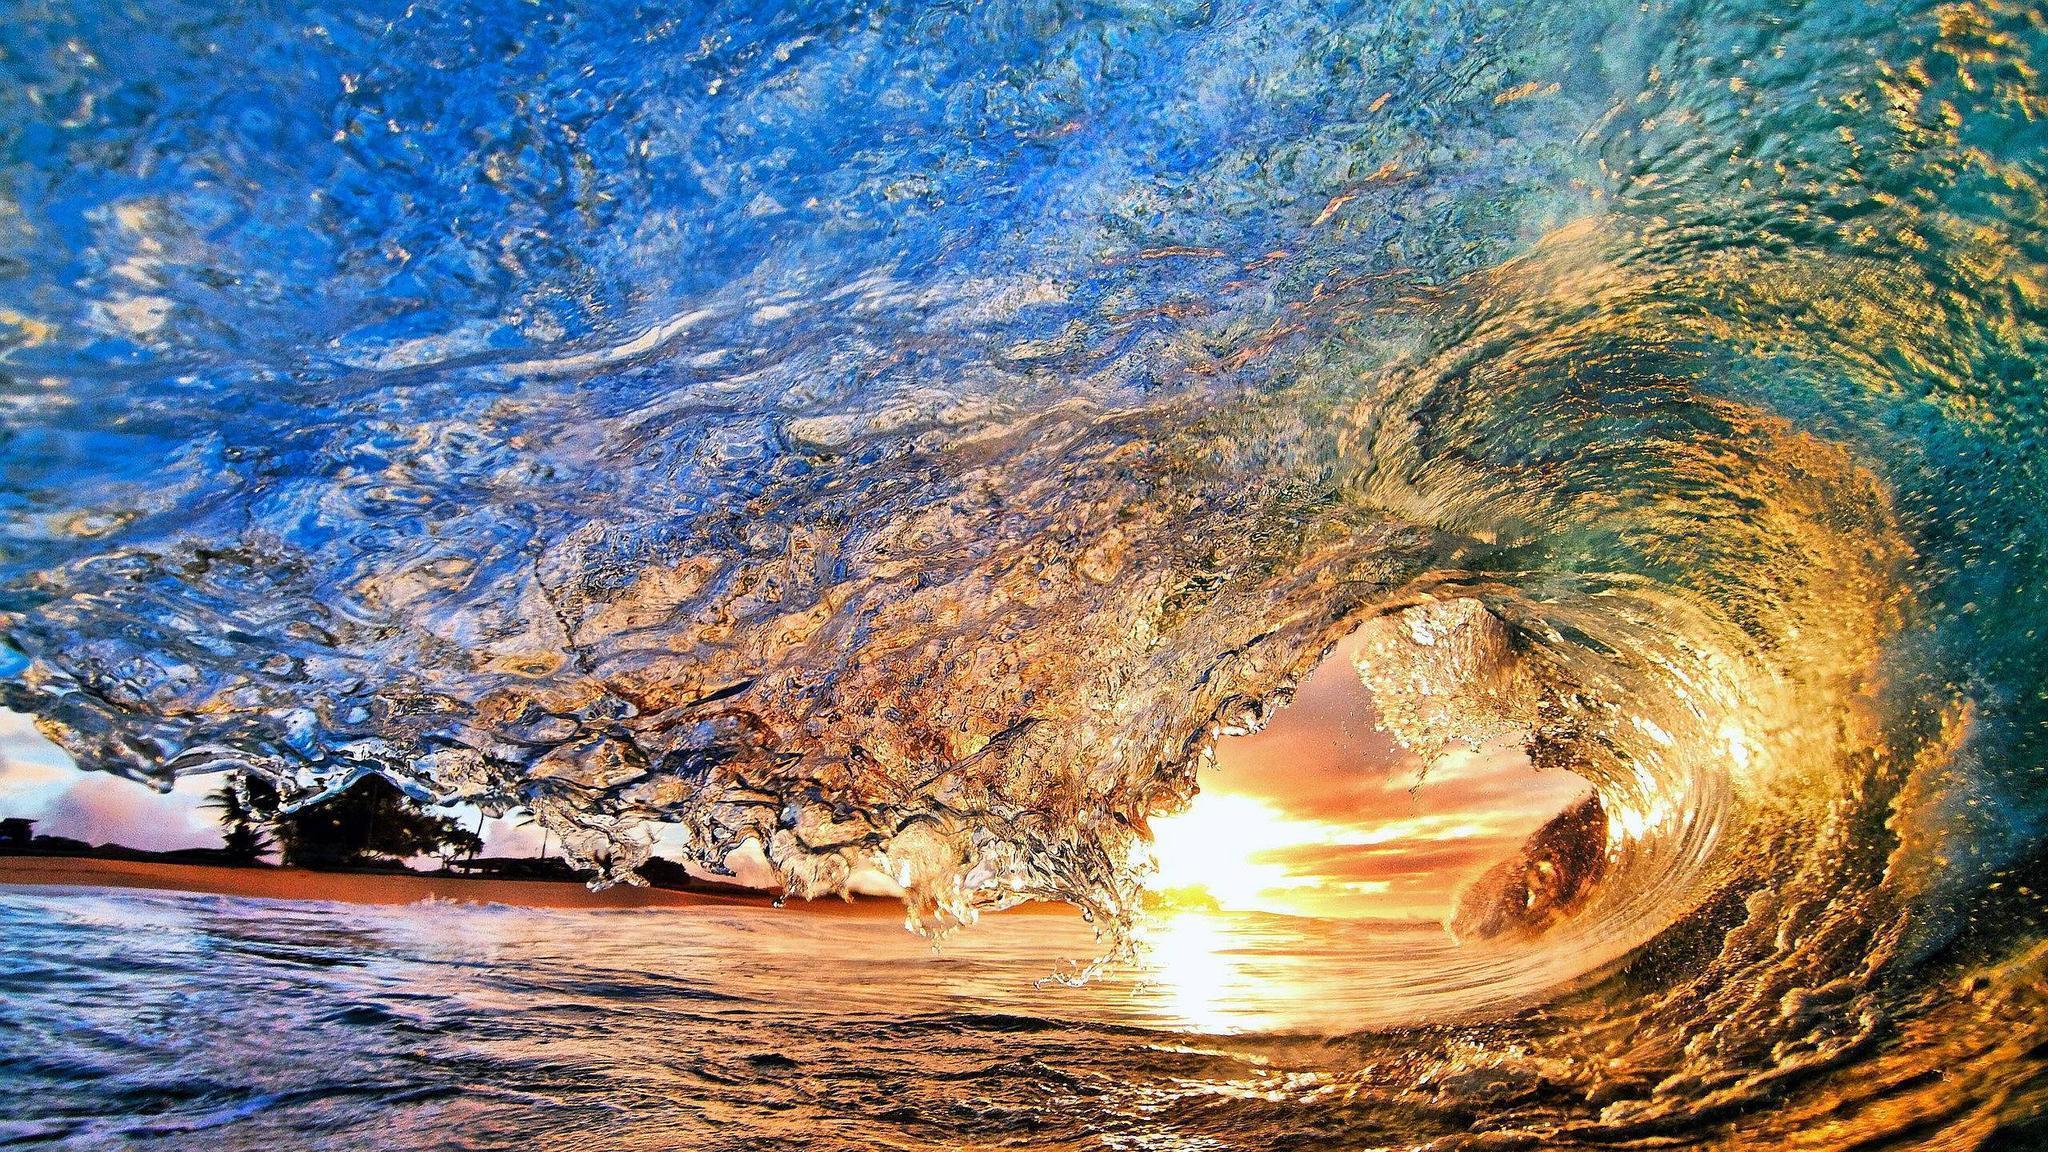 Ocean Wave Sunset Wallpaper